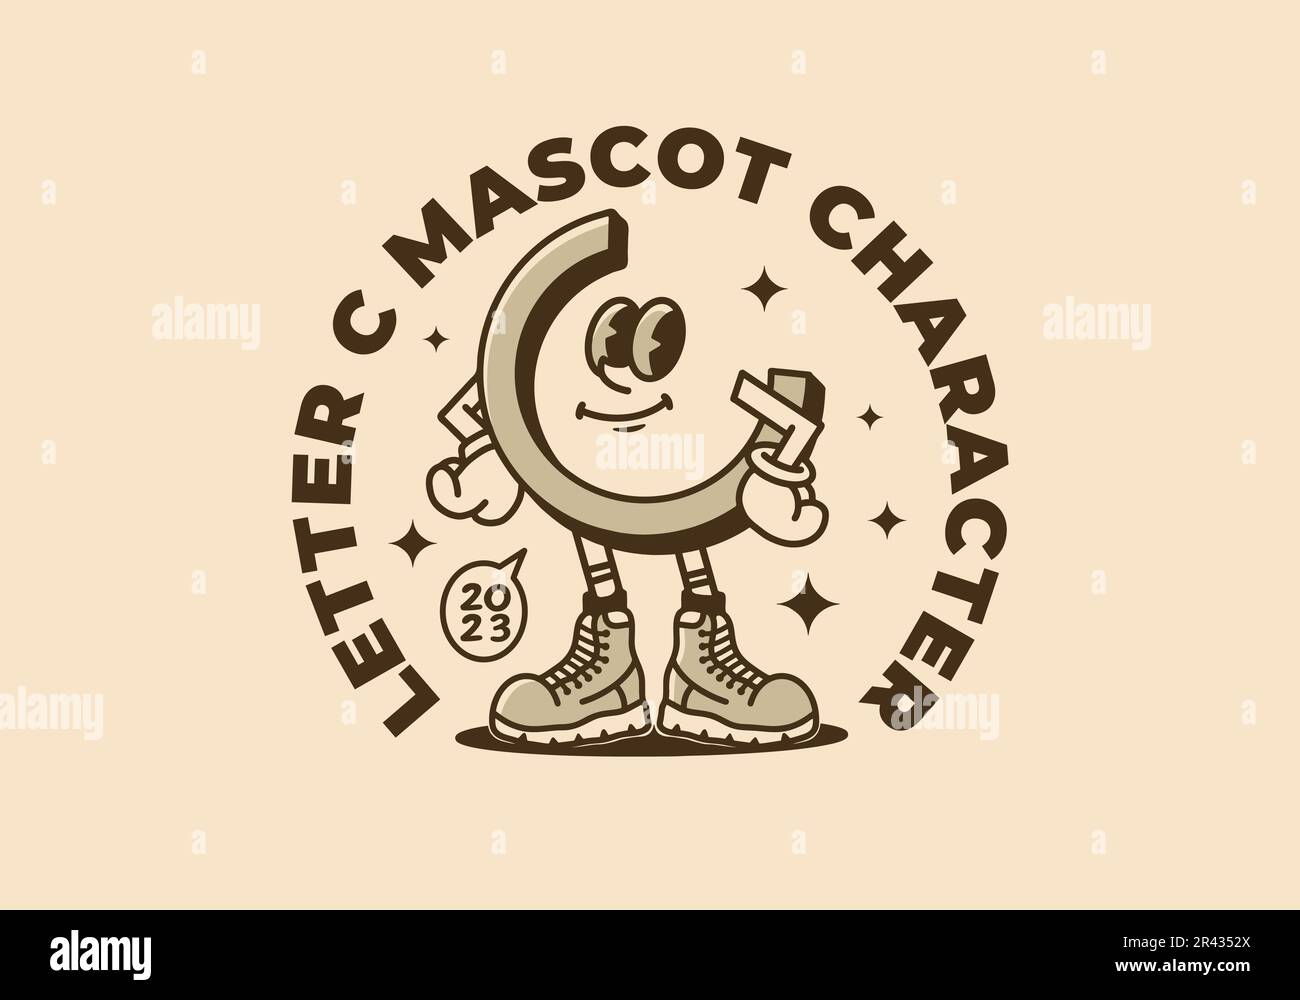 Personnage de mascotte dessin d'illustration d'une lettre C dans un style coq Illustration de Vecteur